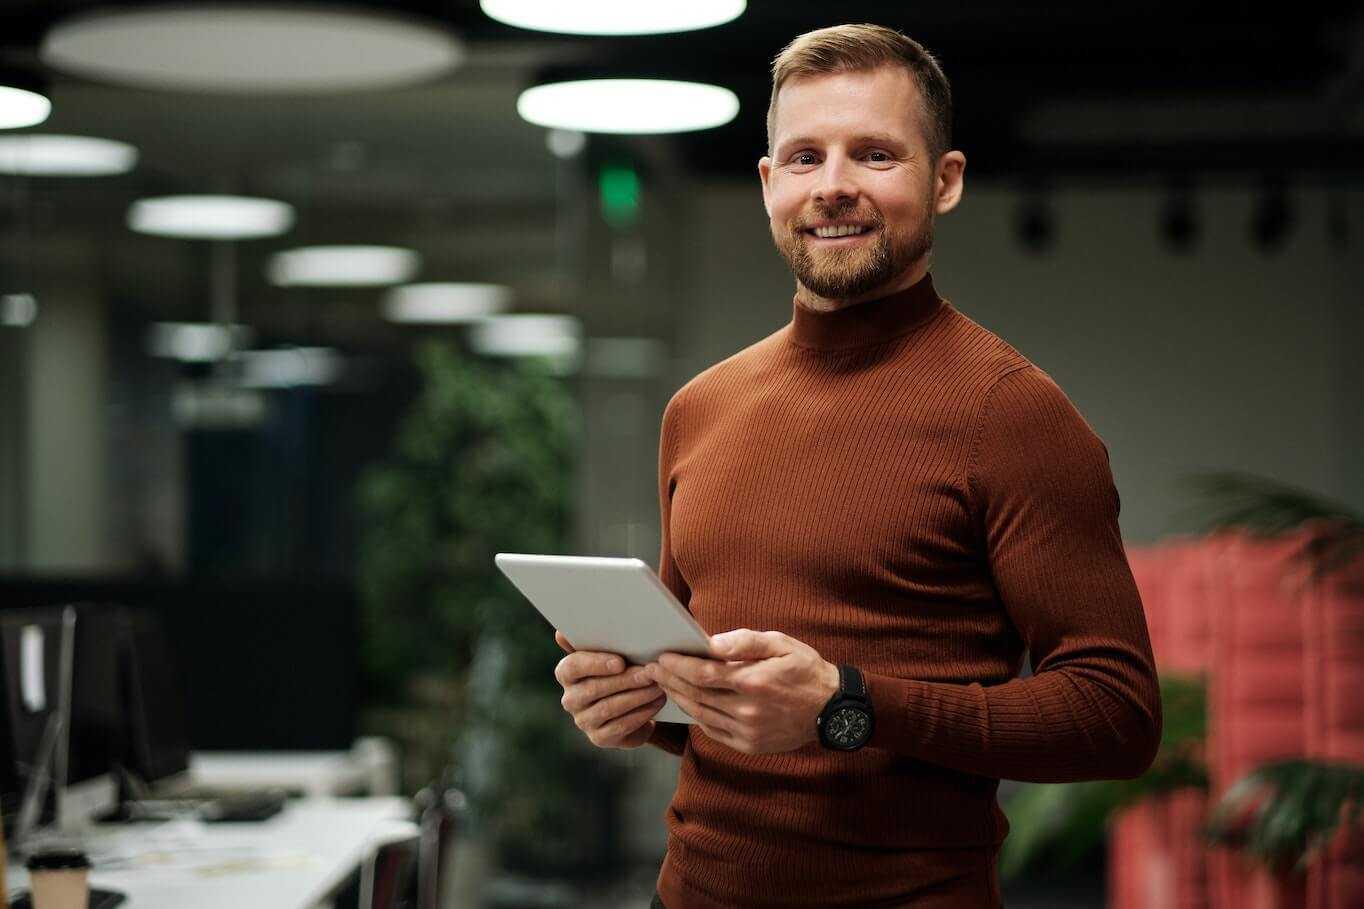 Man holding tablet smiling green back